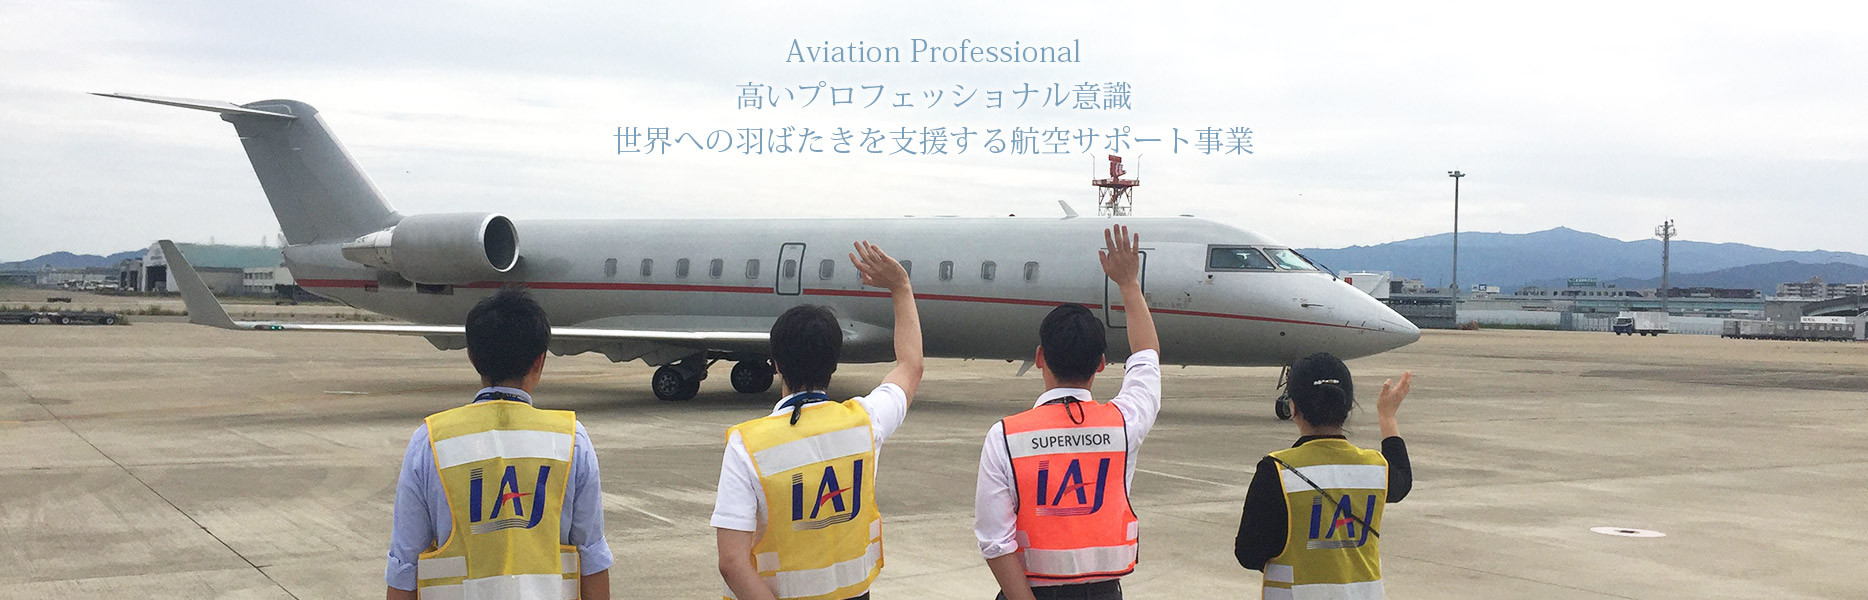 Aviation Professional 高いプロフェッショナル意識 世界への羽ばたきを支援する航空サポート事業